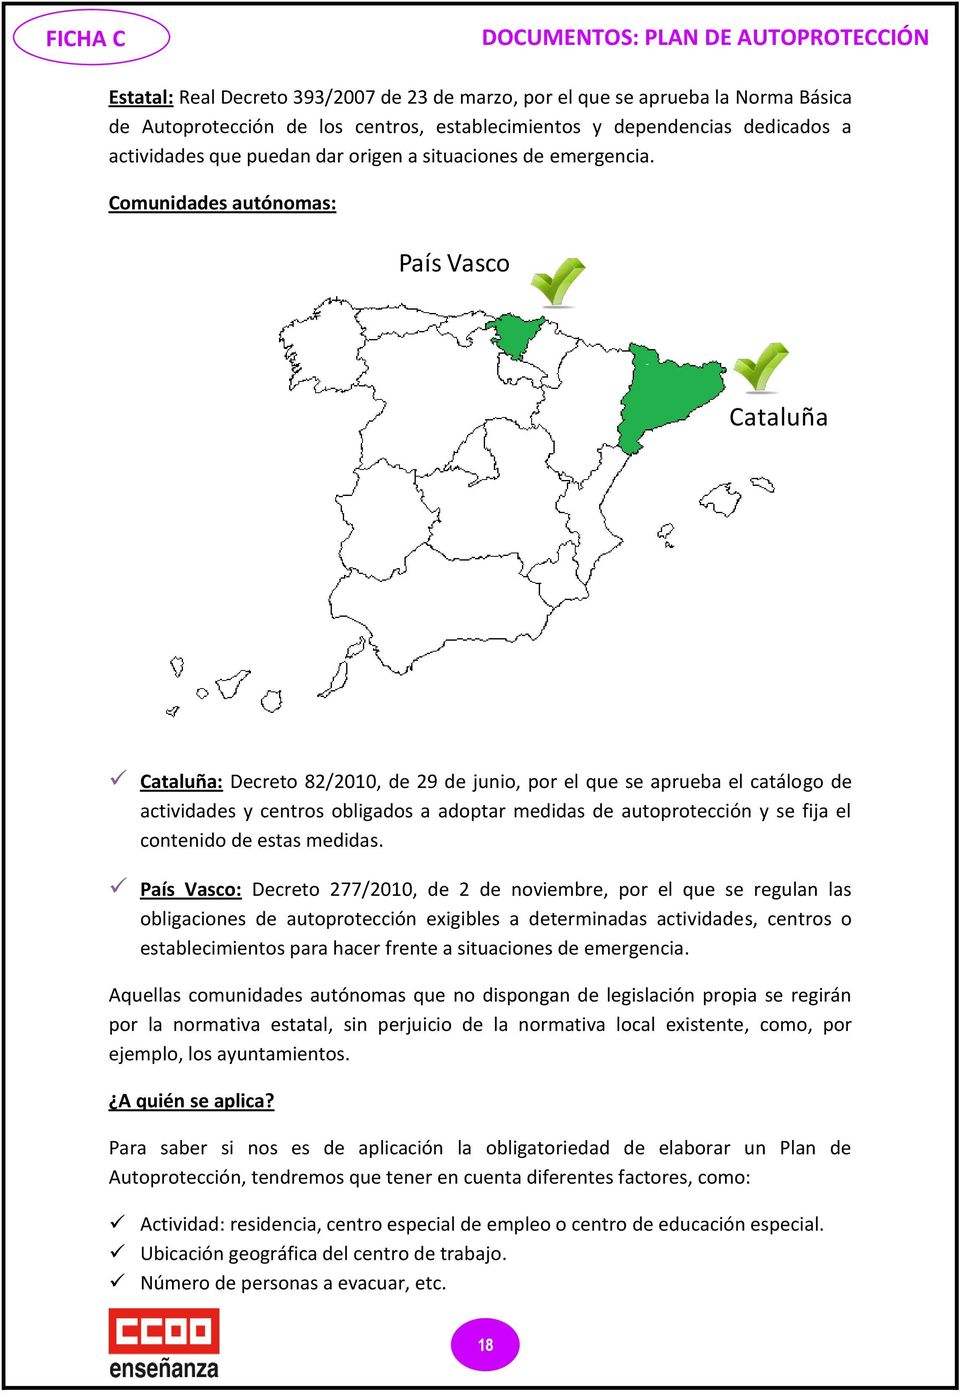 Comunidades autónomas: País Vasco Cataluña Cataluña: Decreto 82/2010, de 29 de junio, por el que se aprueba el catálogo de actividades y centros obligados a adoptar medidas de autoprotección y se